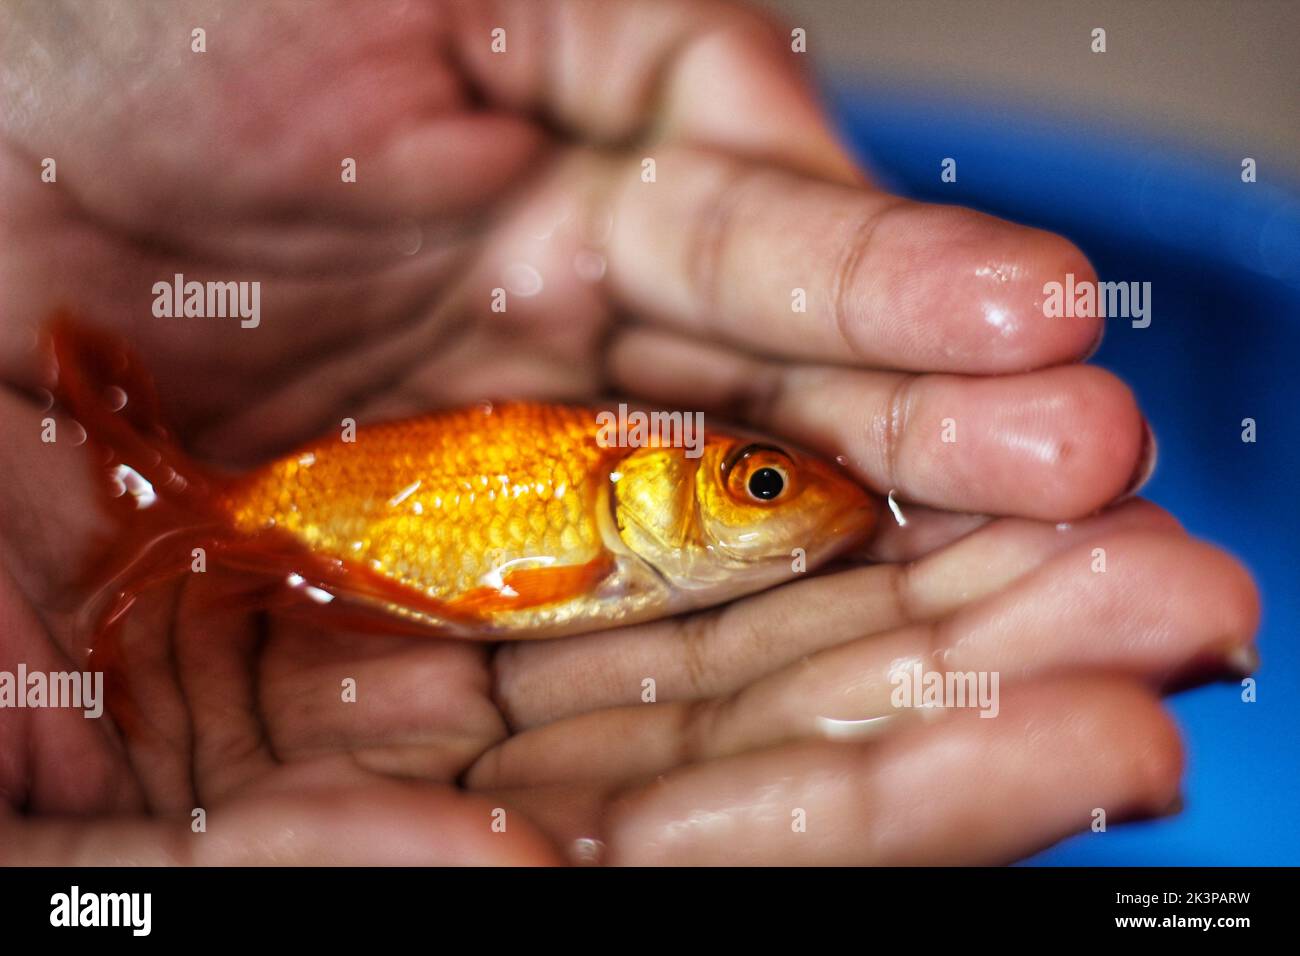 Un gros plan d'un poisson rouge commun dans les paumes d'une personne Banque D'Images